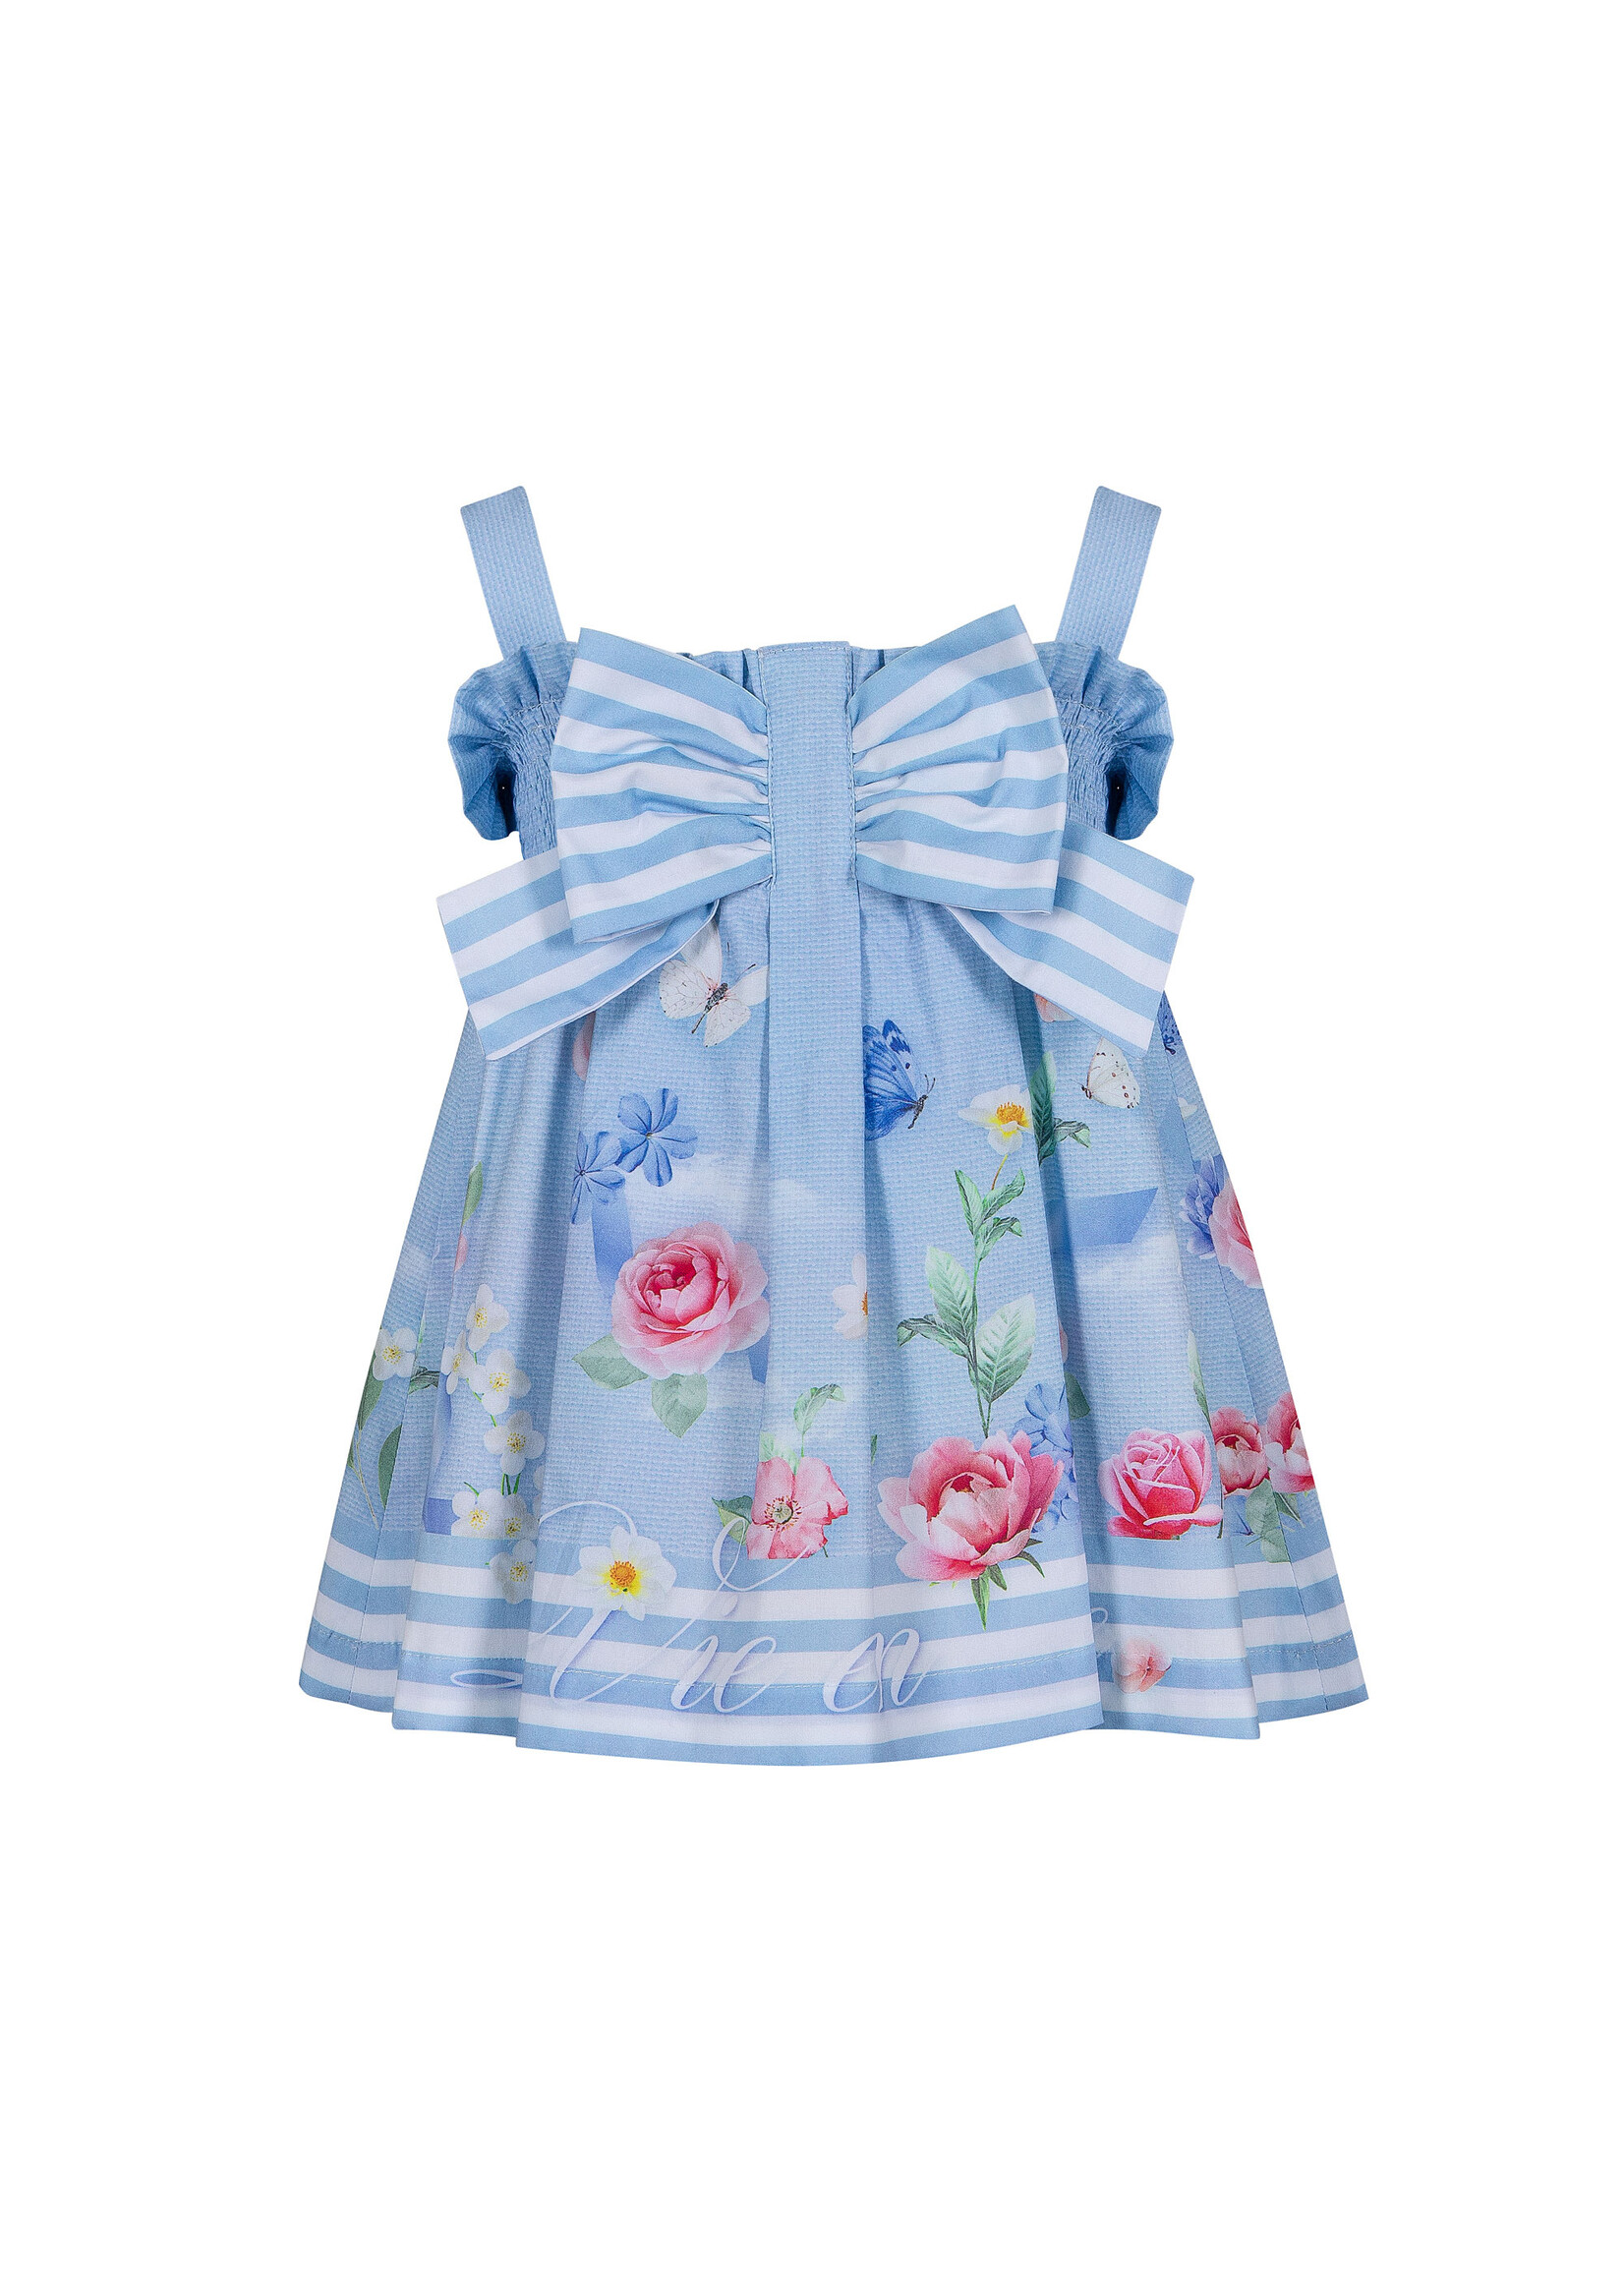 lapin house jurk mouwloos bloemen grote strik blauw